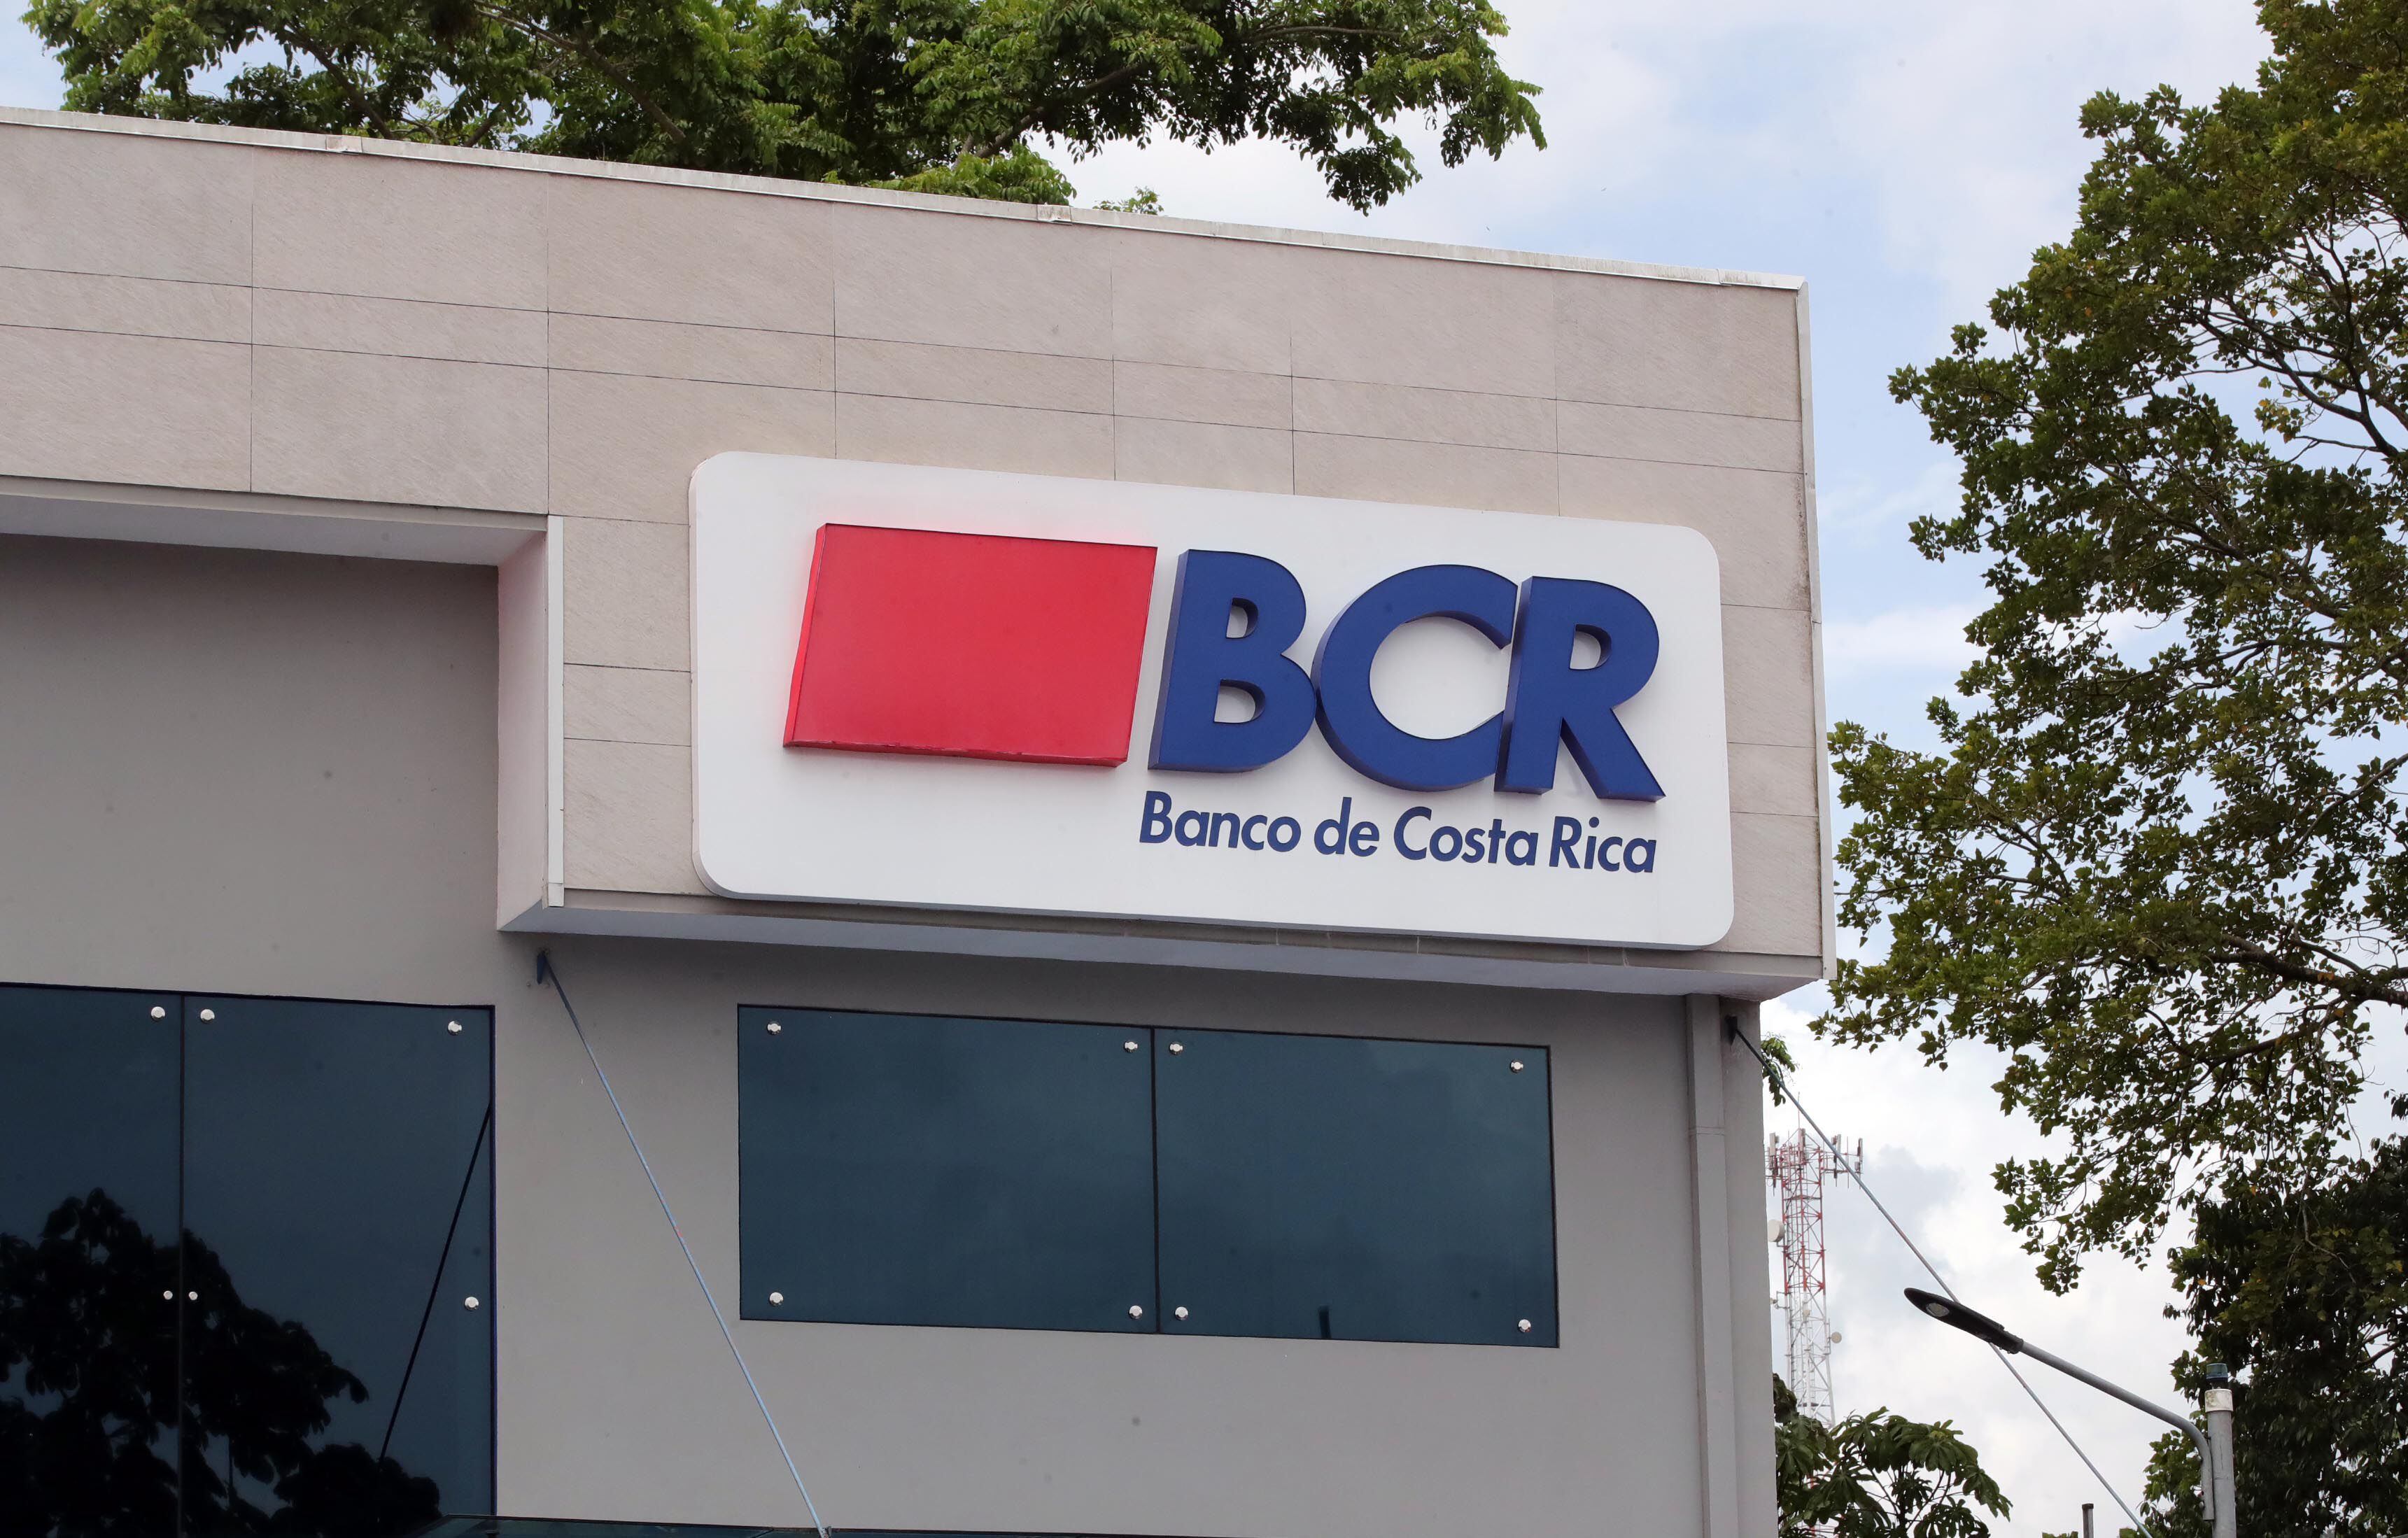 BCR SAFI, subsidiaria del Banco de Costa Rica, se ha visto envuelta en cuestionamientos debido a quejas por parte de inversionistas en relación con la administración del fondo de inversión inmobiliario no diversificado. Archivo: